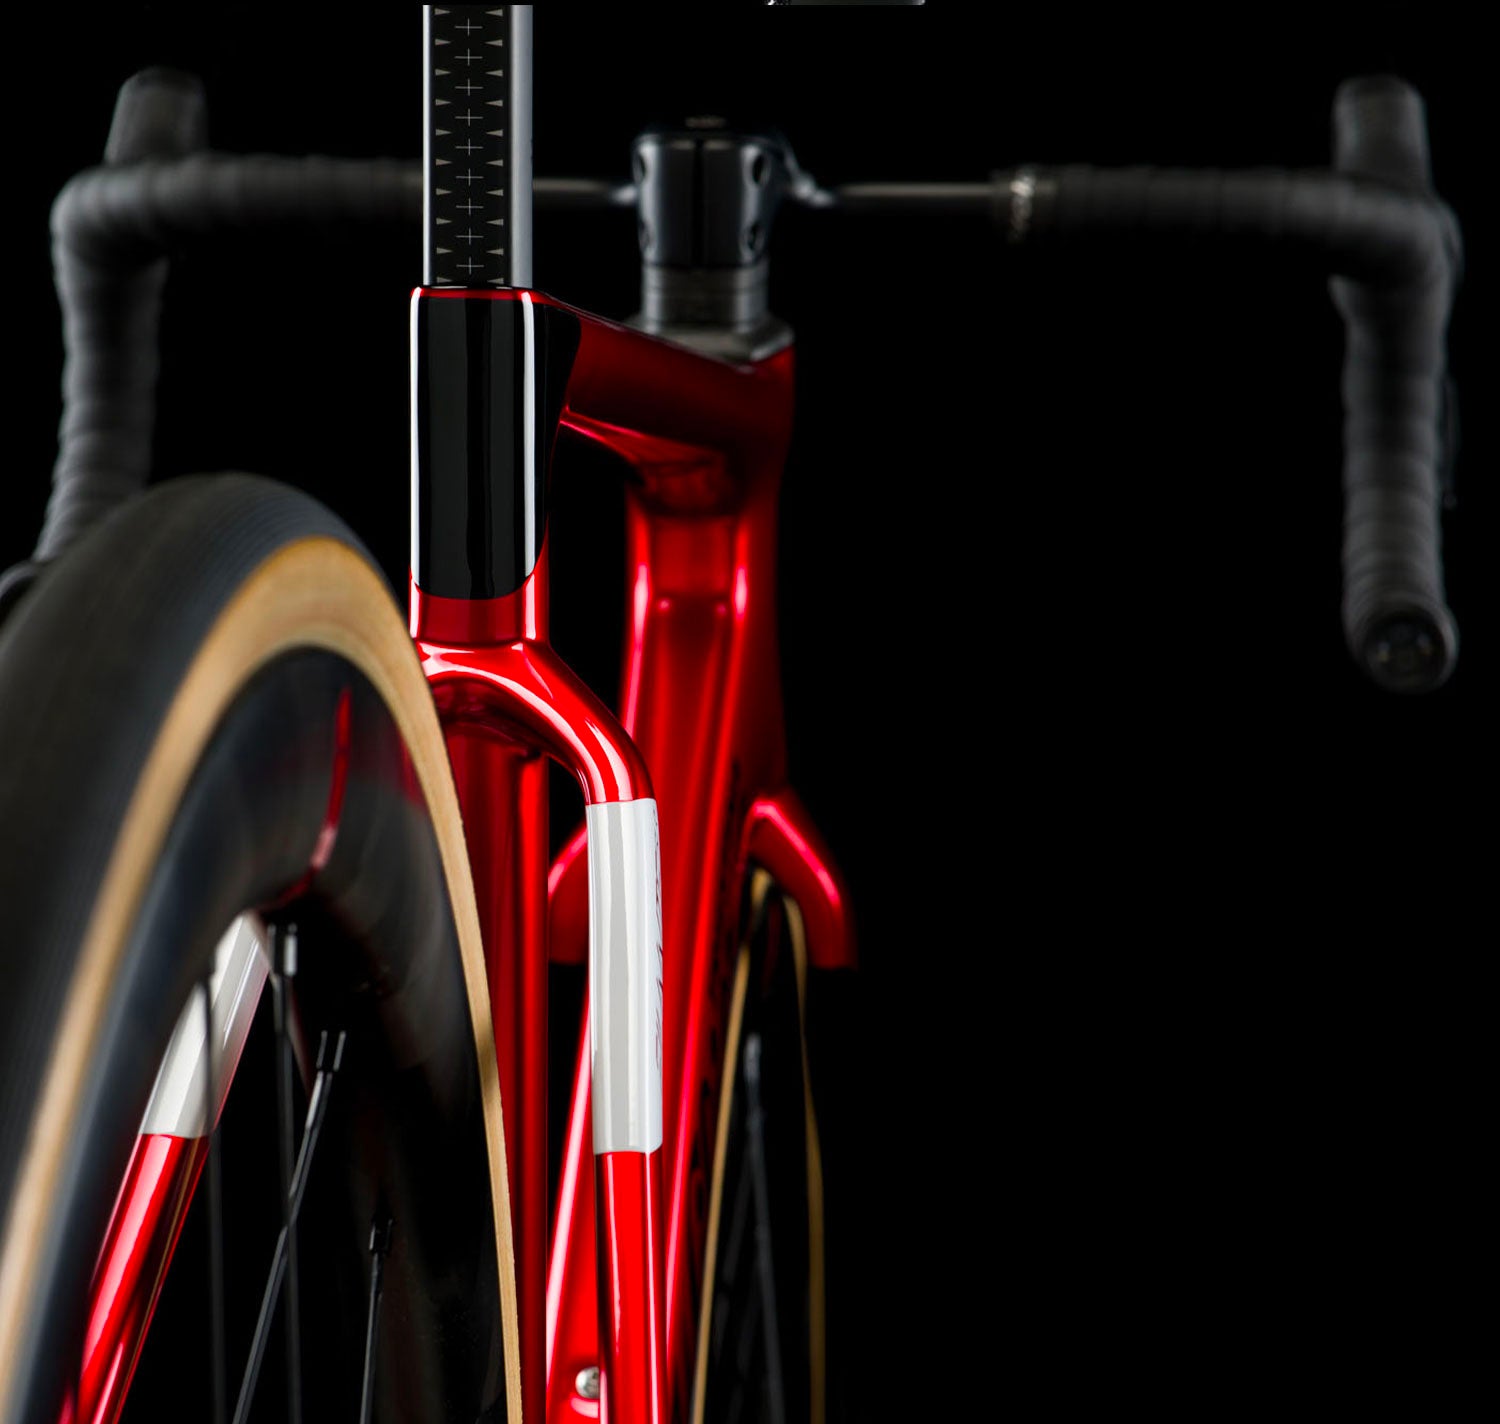 Wilier Filante SLR Dura Ace Velvet Red Glossy - Premium Bikeshop